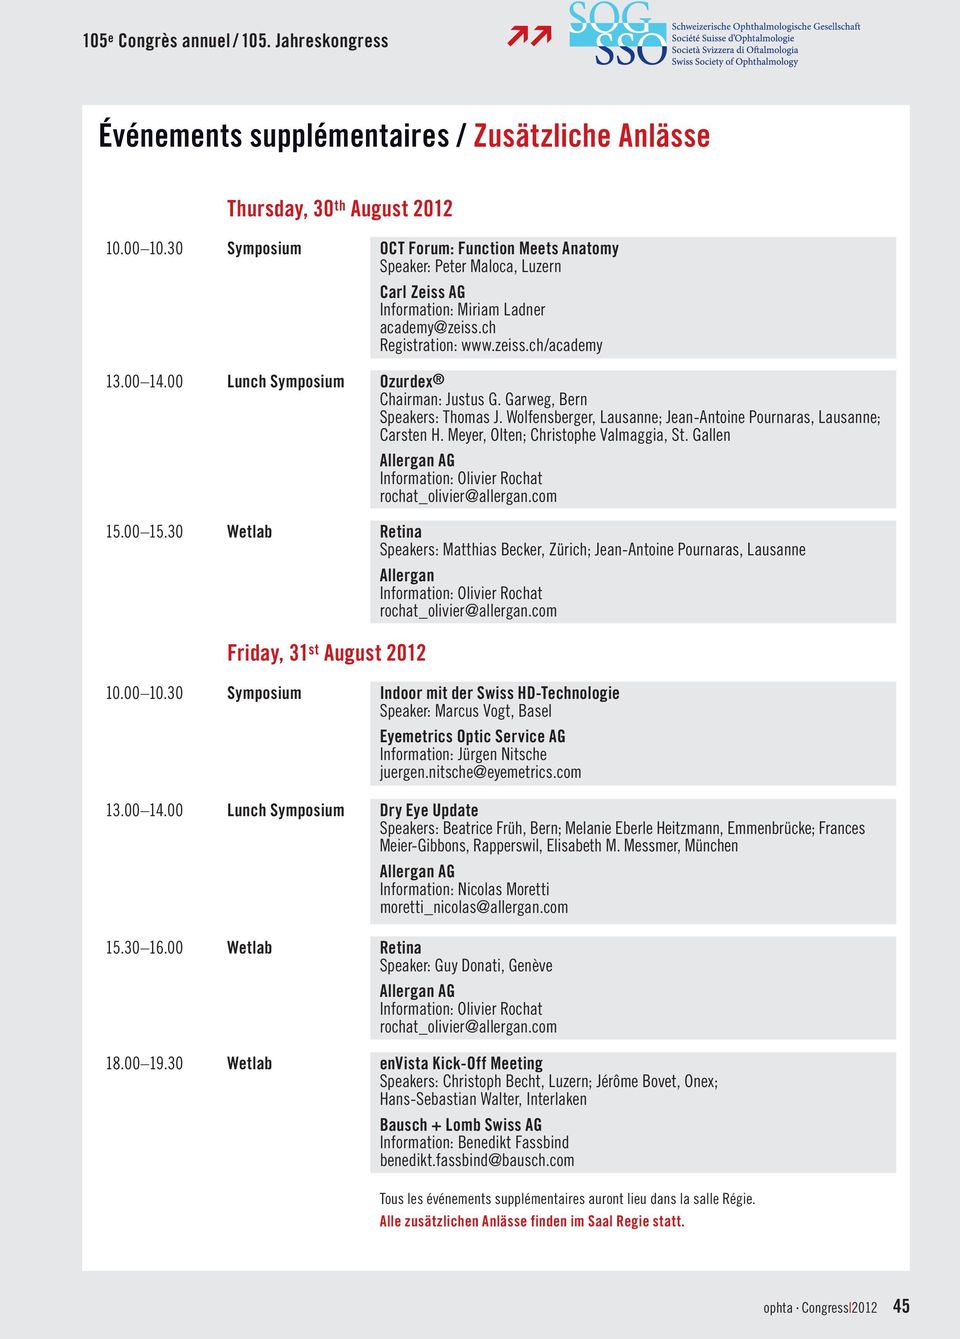 00 Lunch Symposium Ozurdex Chairman: Justus G. Garweg, Bern Speakers: Thomas J. Wolfensberger, Lausanne; Jean-Antoine Pournaras, Lausanne; Carsten H. Meyer, Olten; Christophe Valmaggia, St.